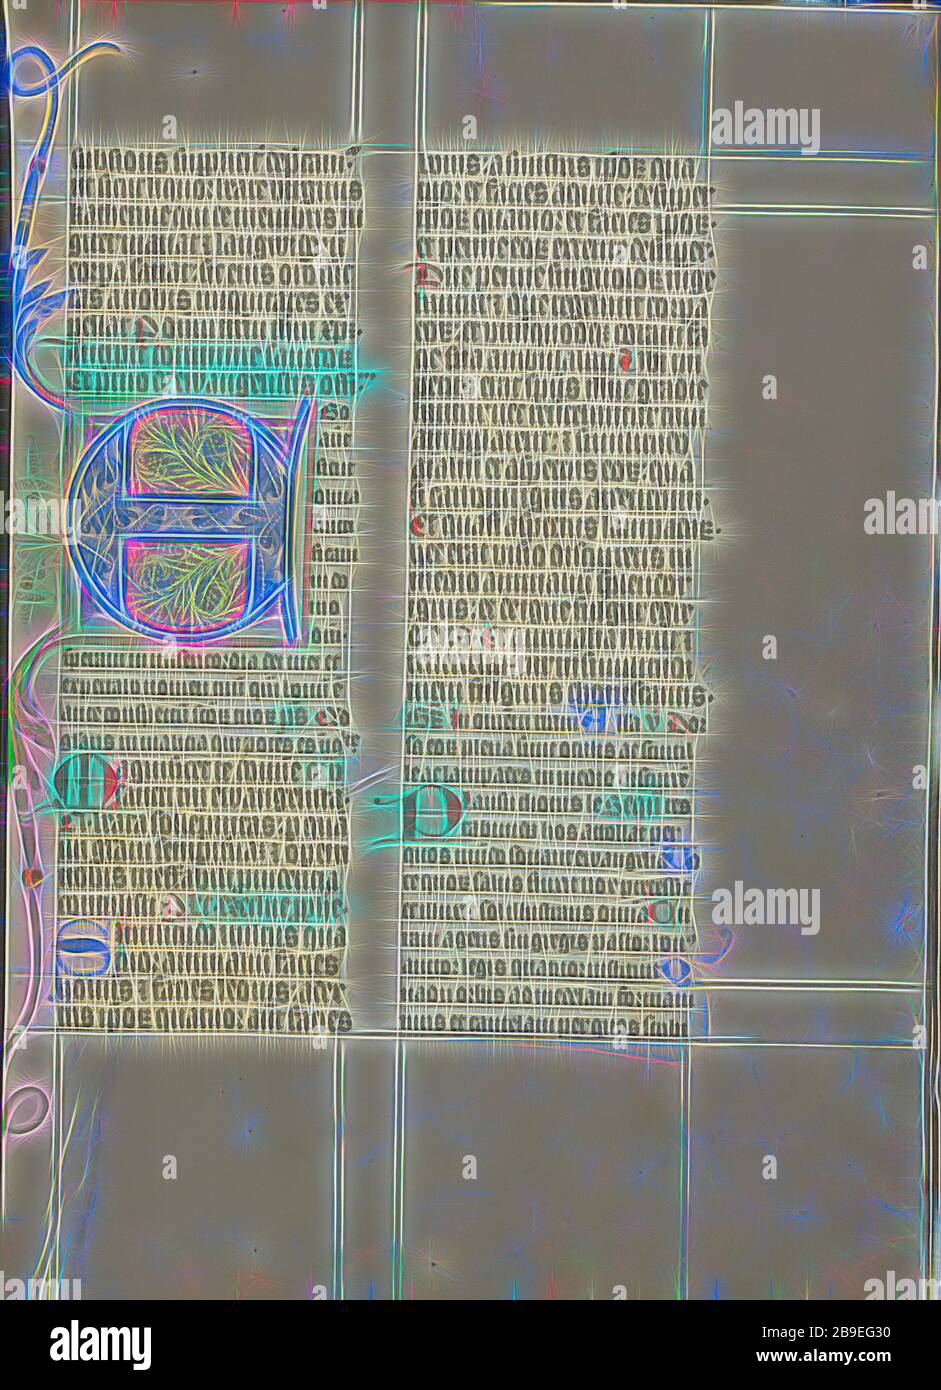 Décoré initial E, Maître Michael (autrichien, actif vers 1420 jusqu'au milieu du XVe siècle), Vienne, Autriche, vers 1420 - 1430, couleurs de Tempera, feuille d'or, et encre sur parchemin, feuille: 41,9 x 31 cm (16 1,2 x 12 3,16 po, repensé par Gibon, design de gaie chaleureuse de luminosité et de rayonnement de rayons lumineux. L'art classique réinventé avec une touche moderne. La photographie inspirée du futurisme, qui embrasse l'énergie dynamique de la technologie moderne, du mouvement, de la vitesse et révolutionne la culture. Banque D'Images